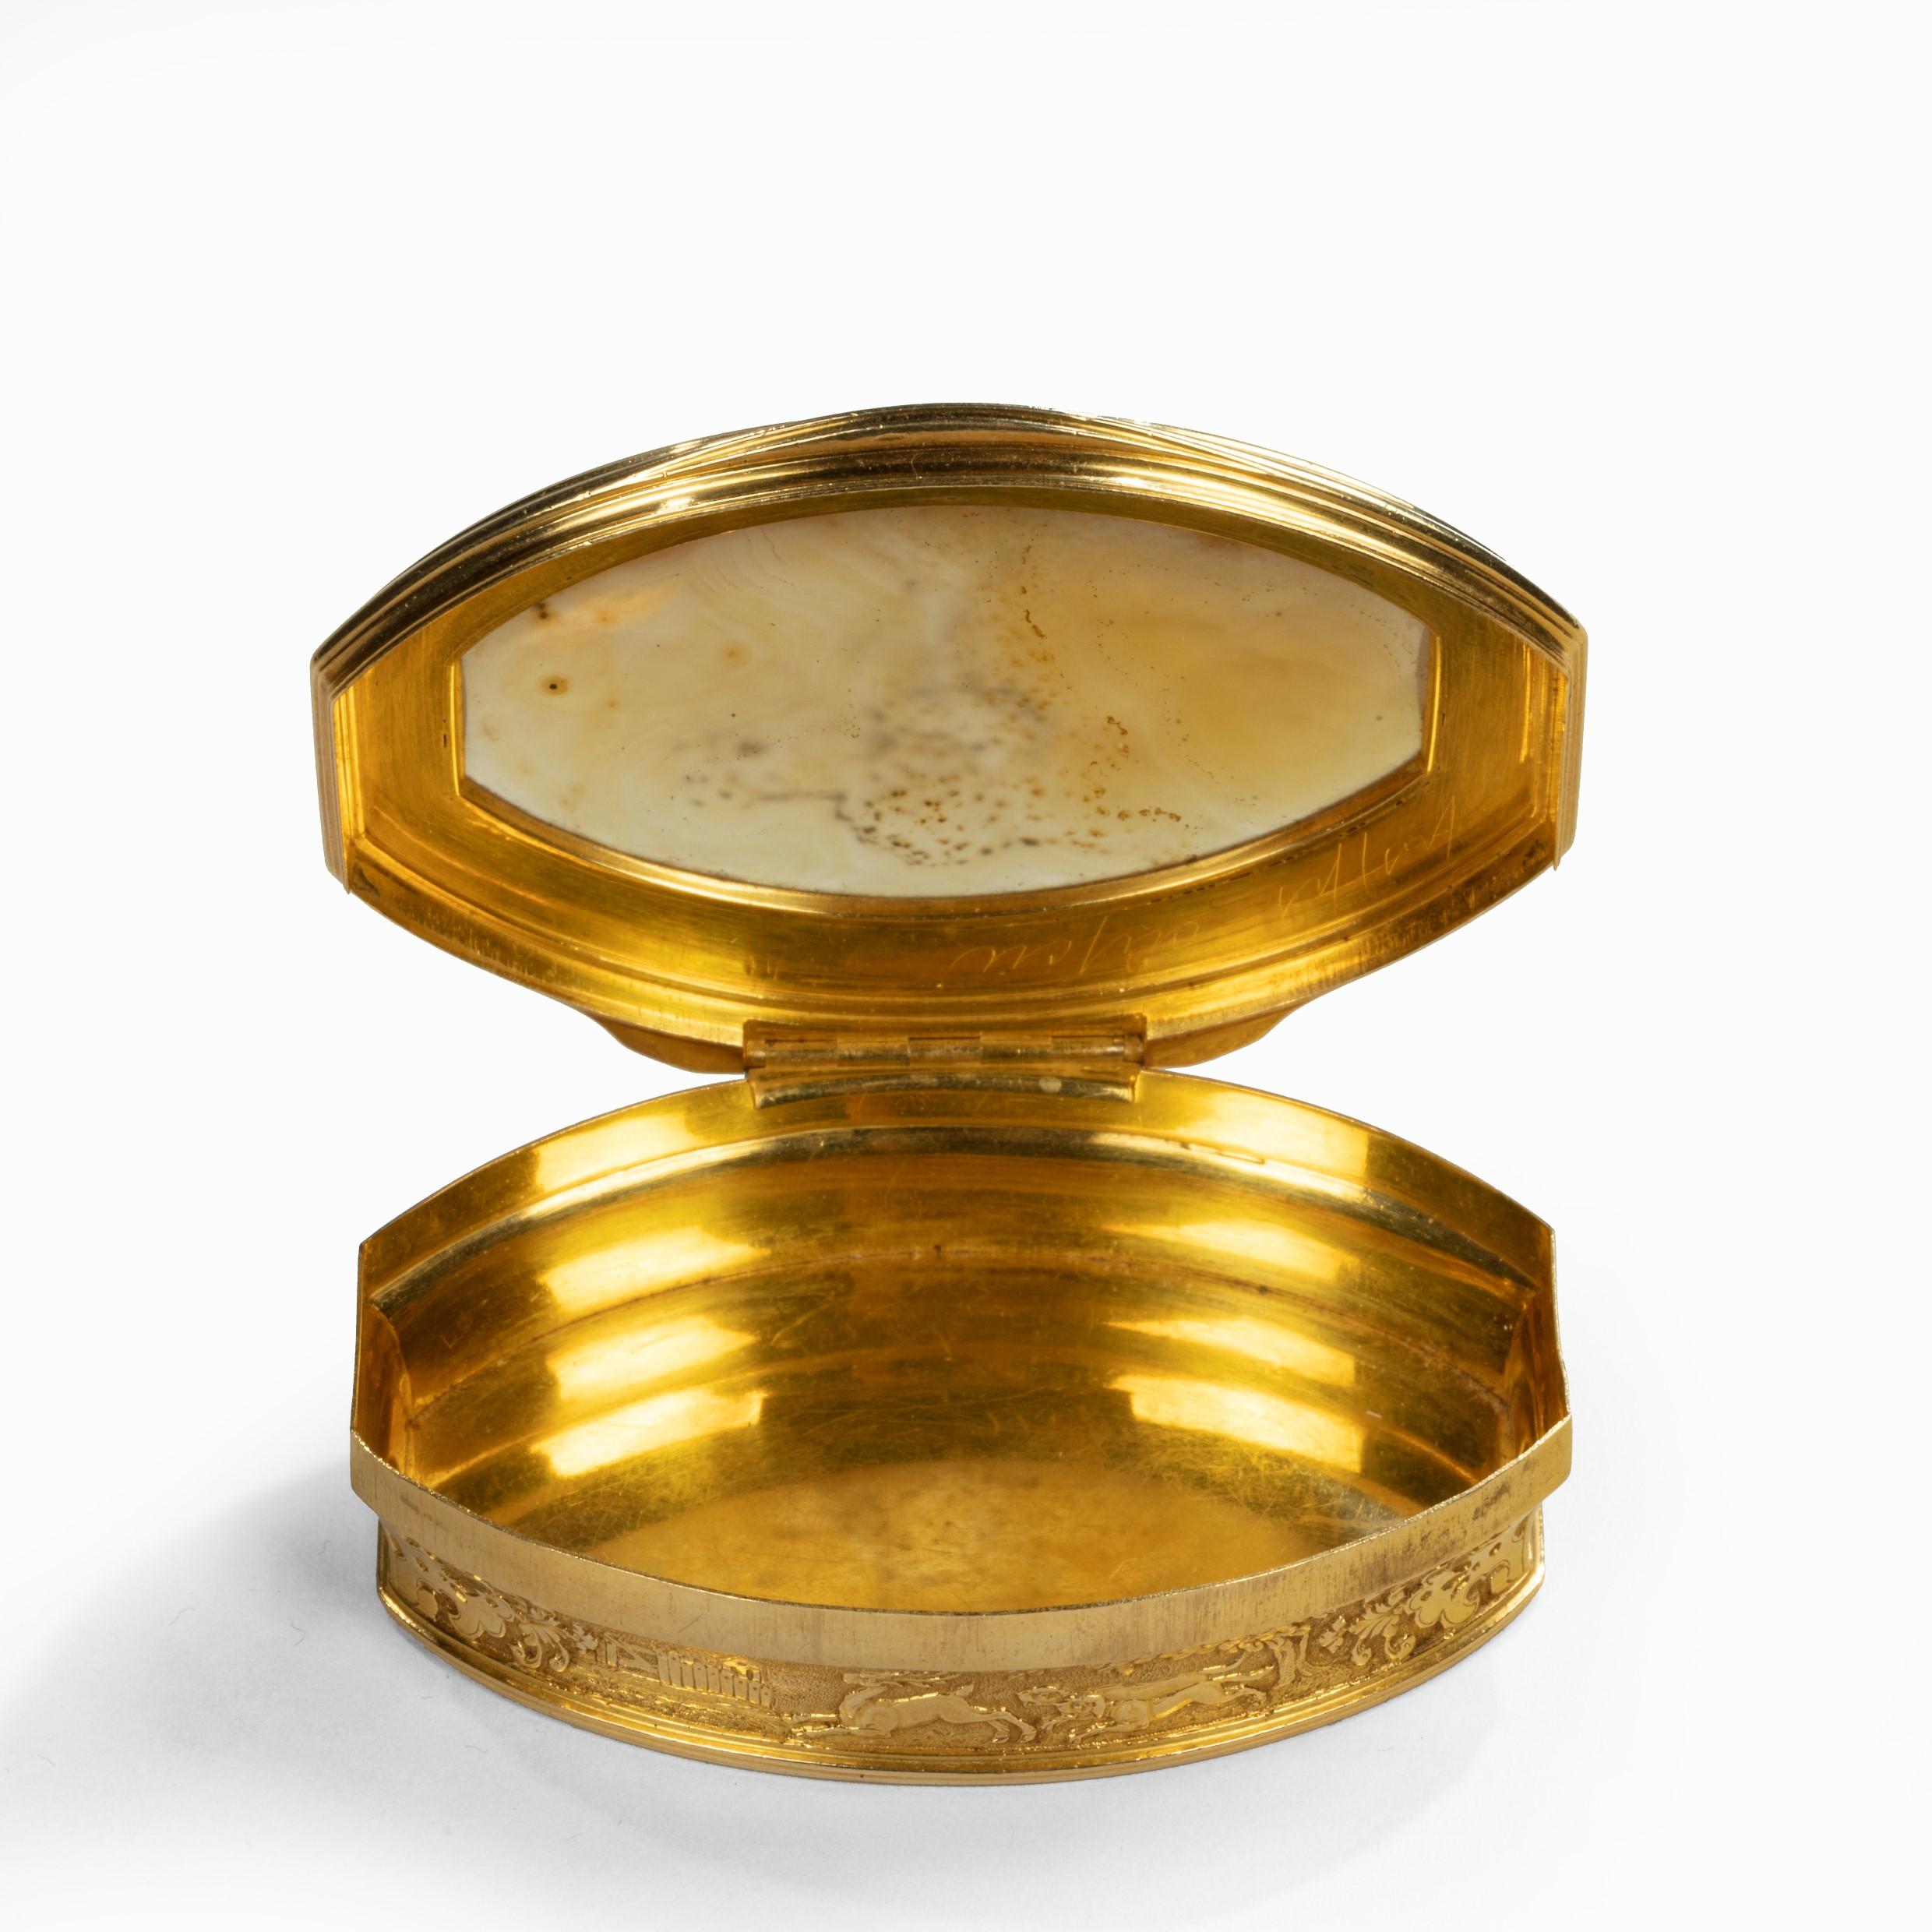 Diese ovale goldene Schnupftabakdose ist mit einem Wappen aus einem 